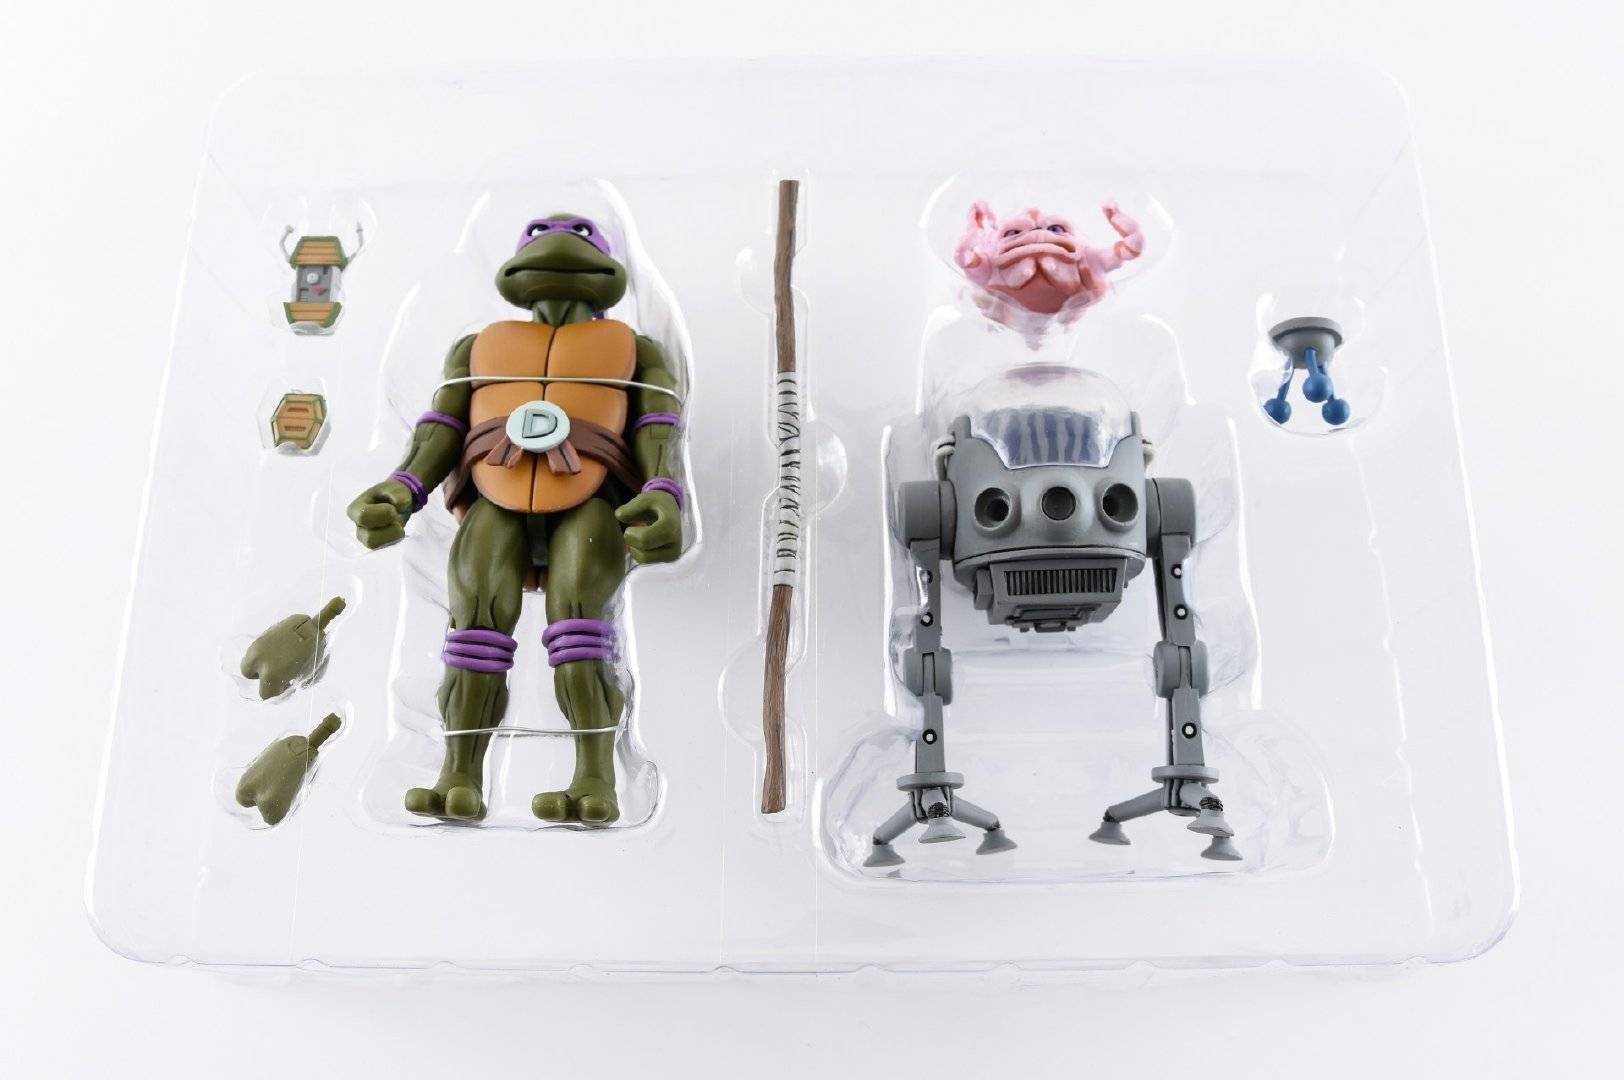 童年经典《忍者神龟》要出玩具了,要卖300多,大家会买